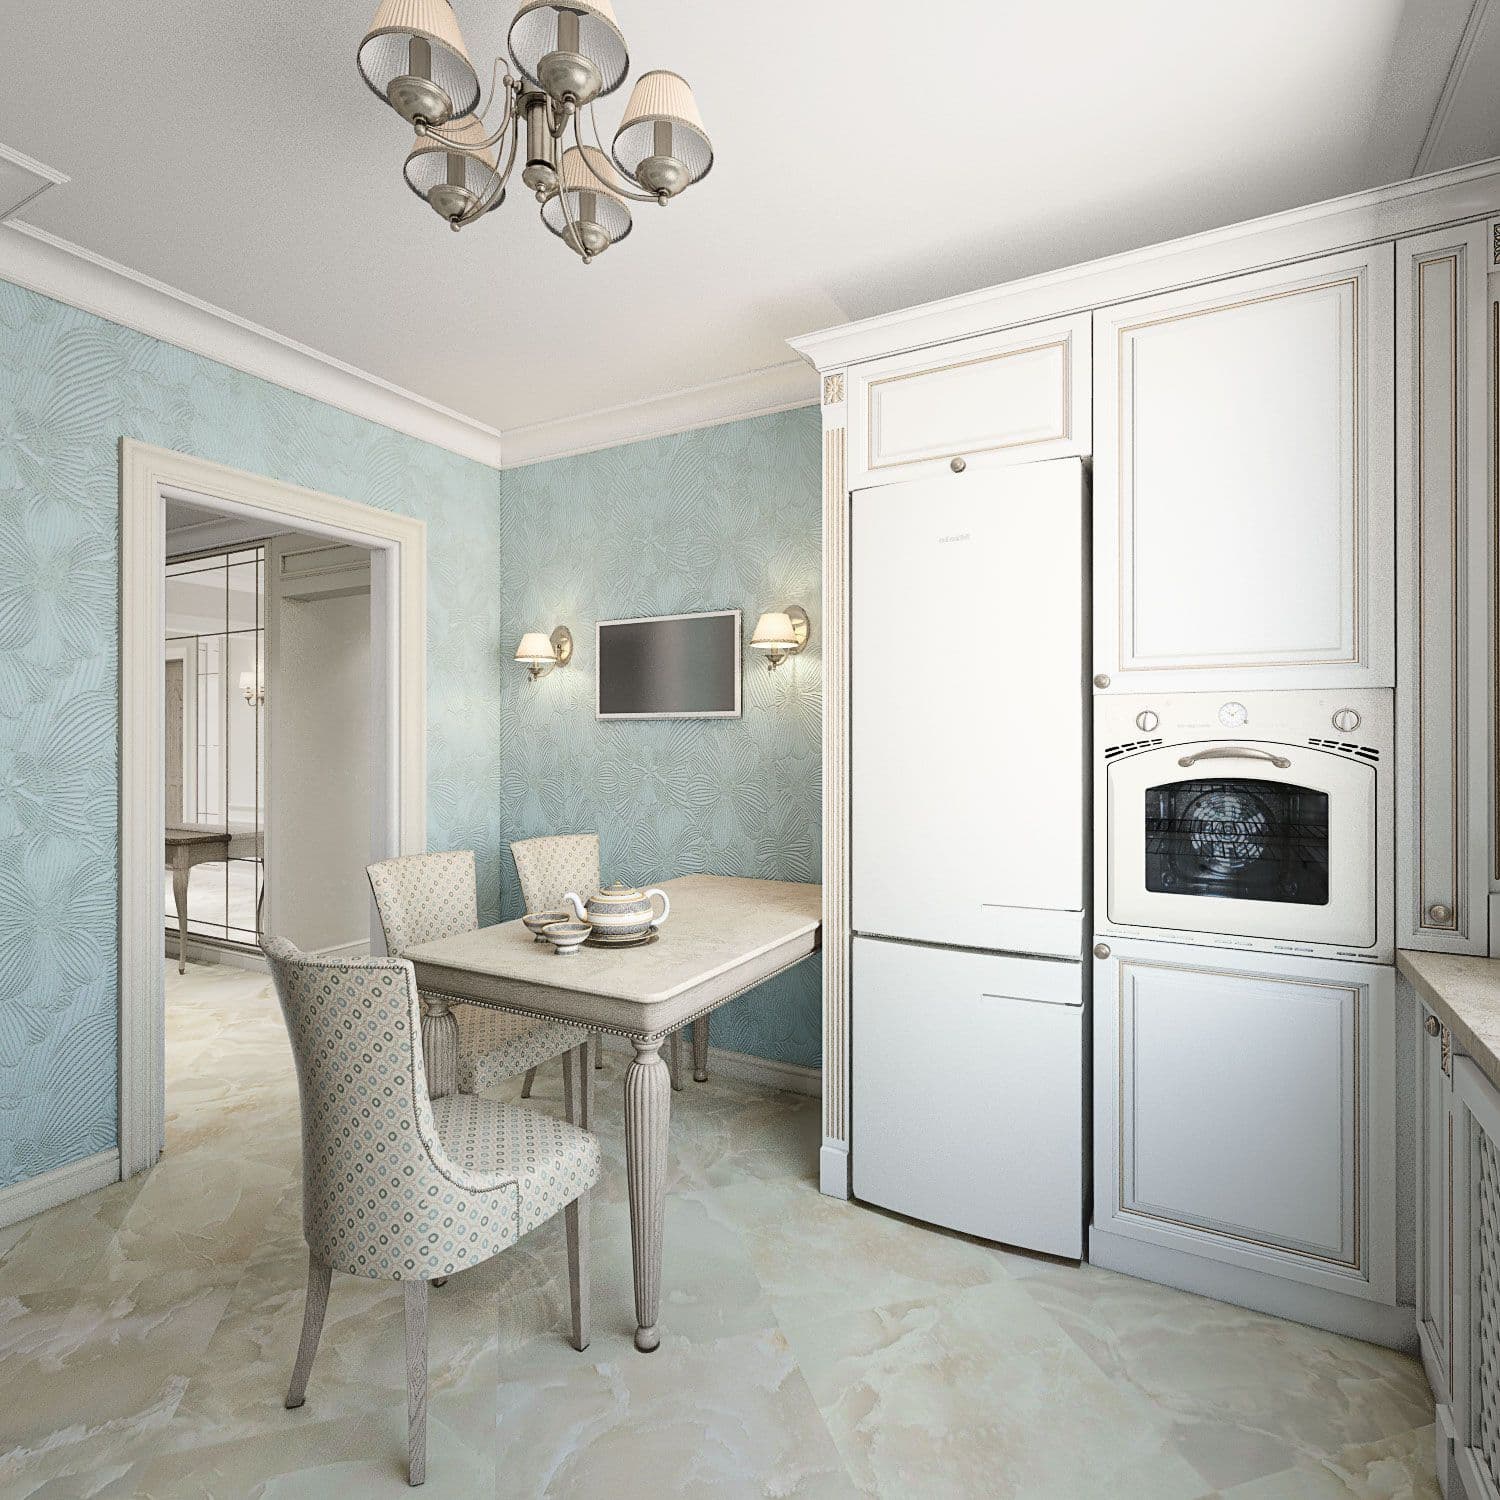 Дизайн кухни в белом цвете с голубыми стенами, фартуком из мозаики, рабочим подоконником, французскими шторами, обеденным столом, вид 2